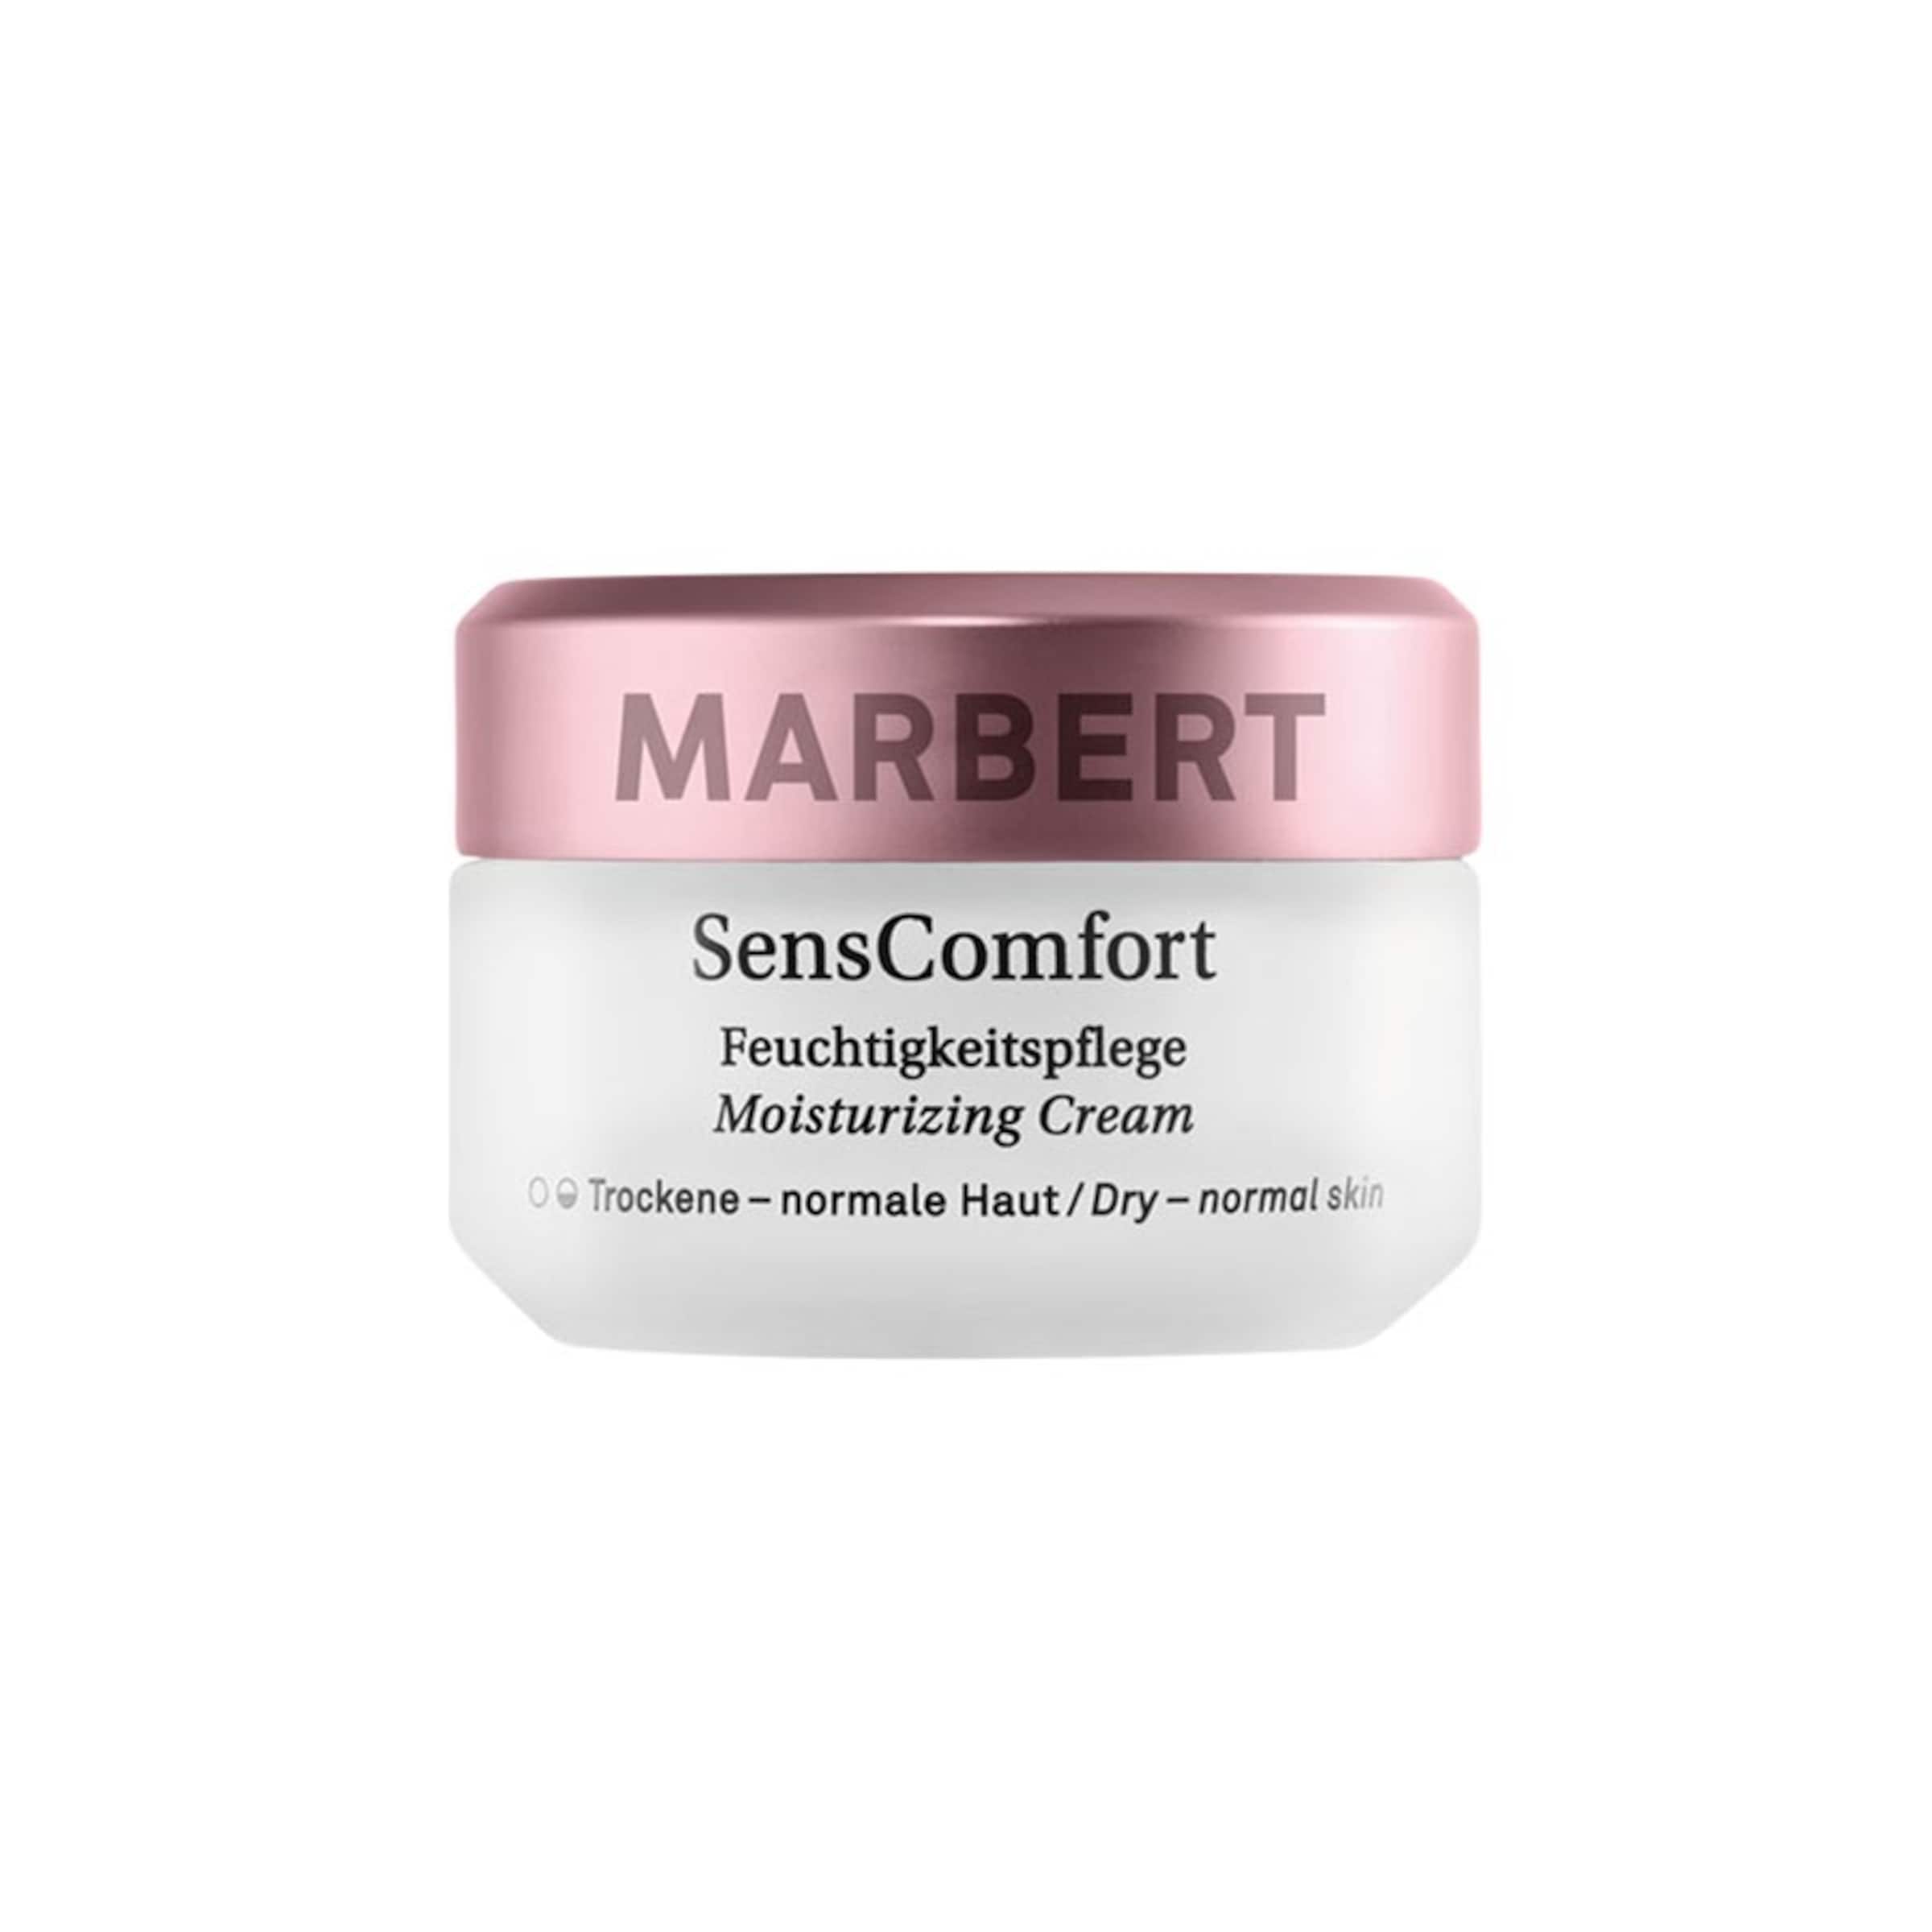 Marbert 24h-Pflege Moisturizing Cream in 